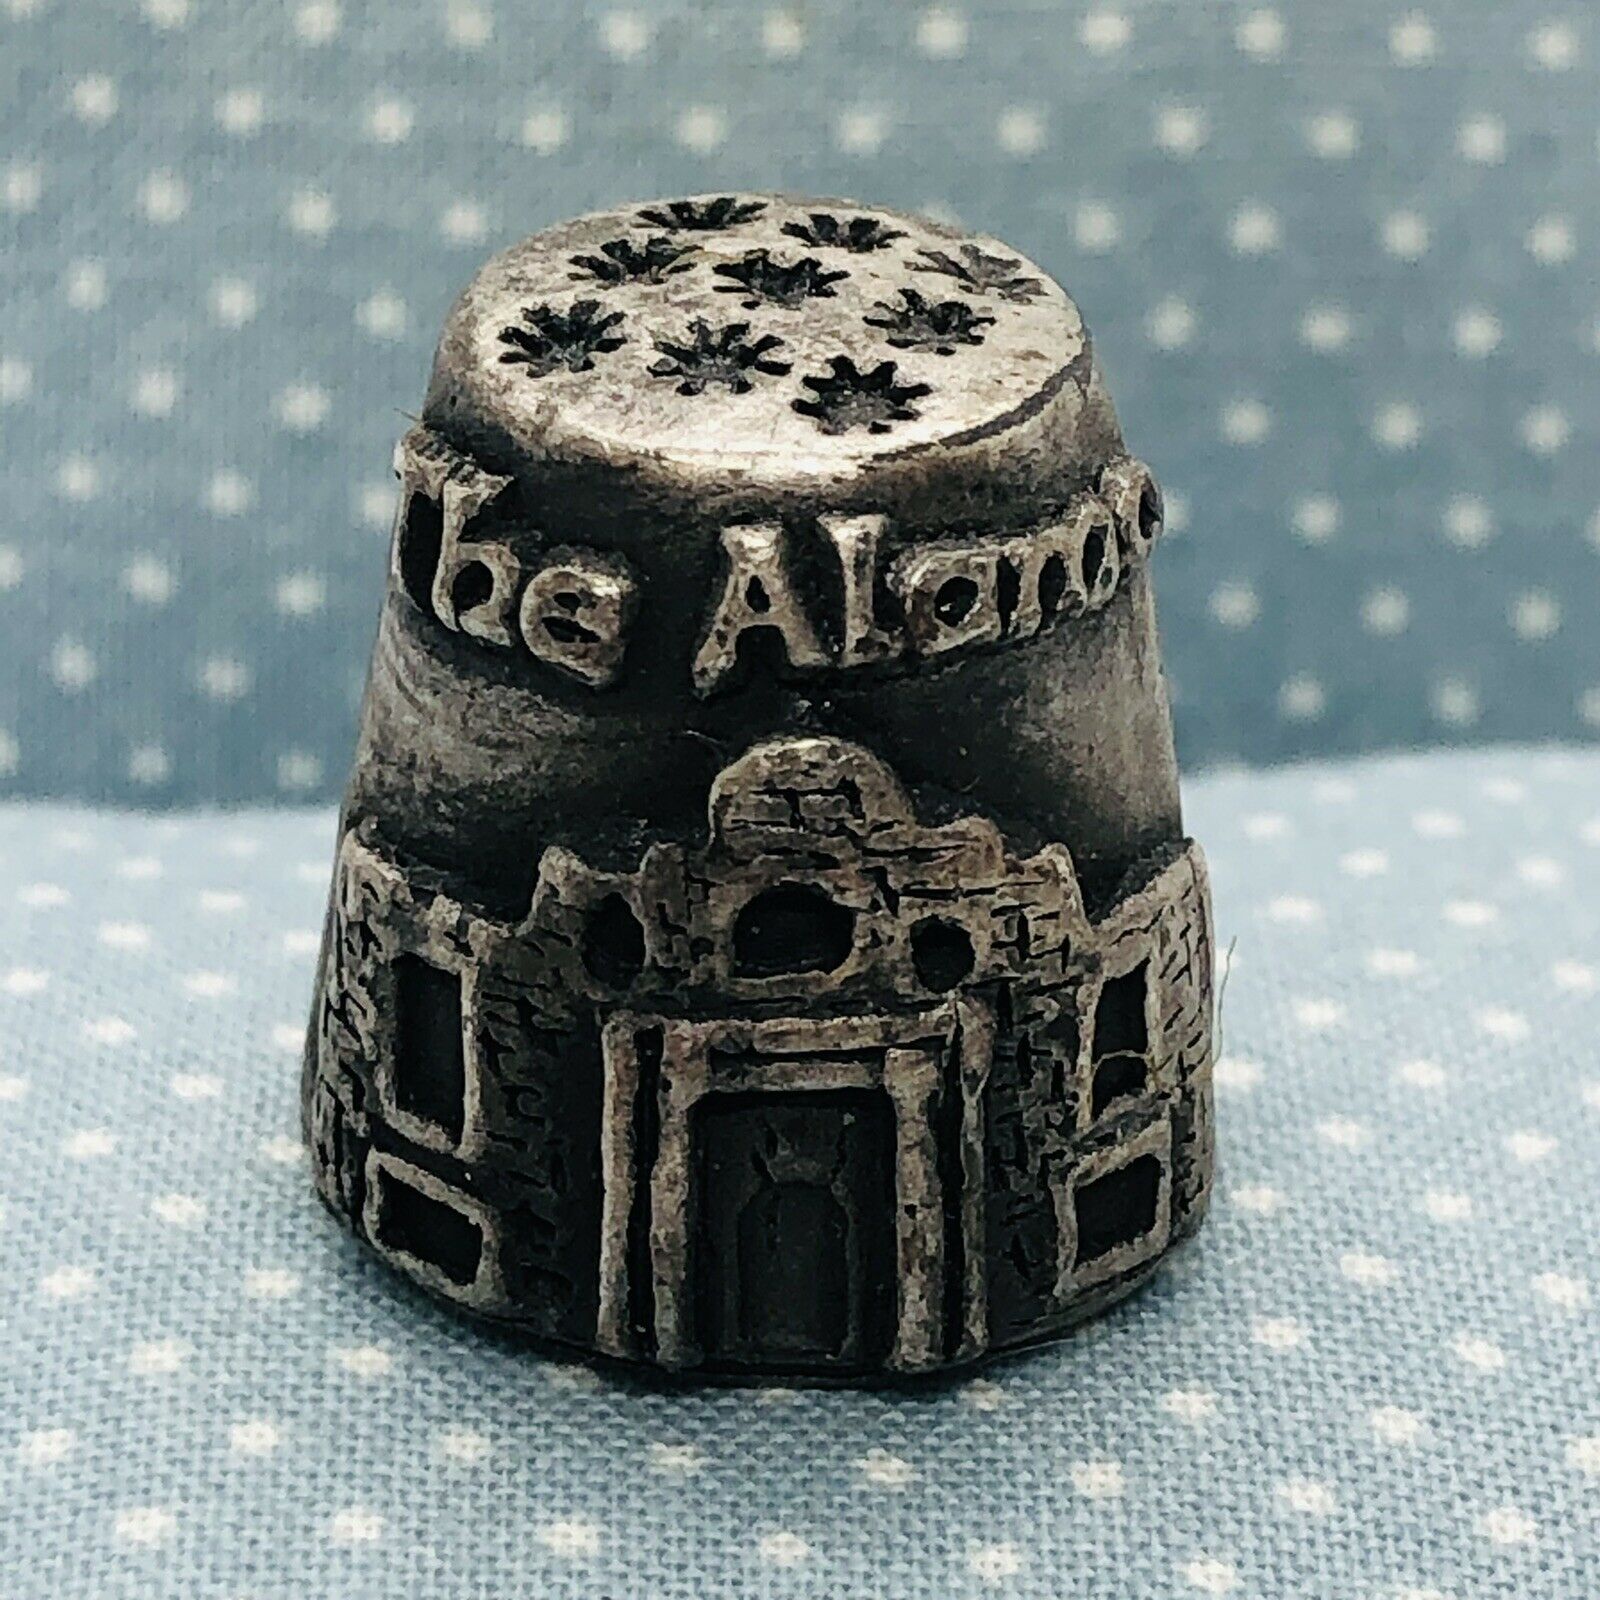 The Alamo Texas Souvenir Pewter Thimble